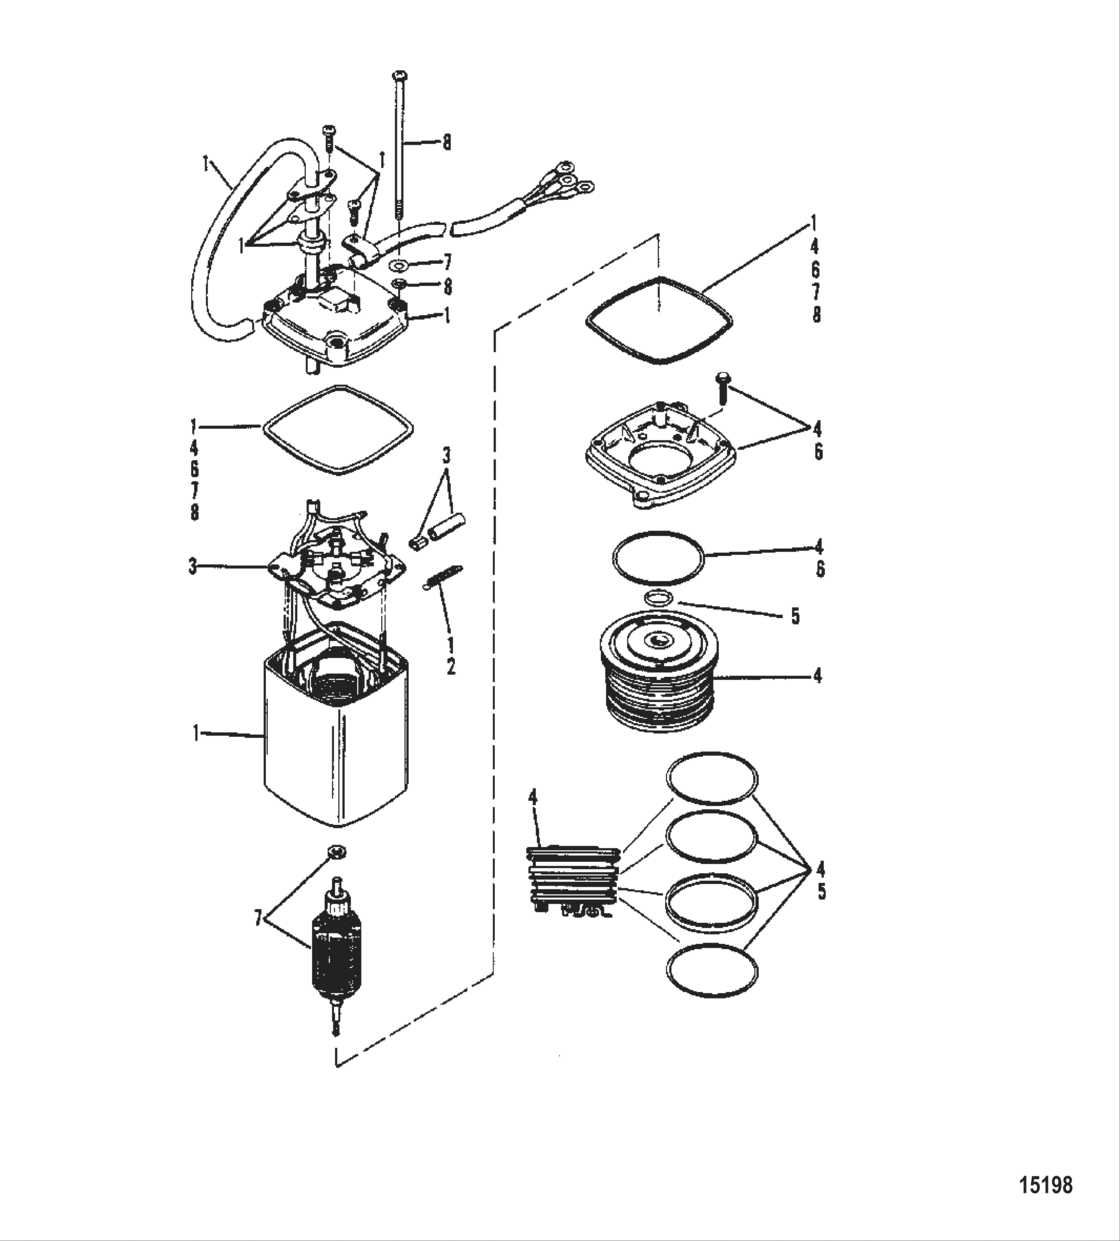 Power Trim Pump (Use With Design I Power Trim Pump)